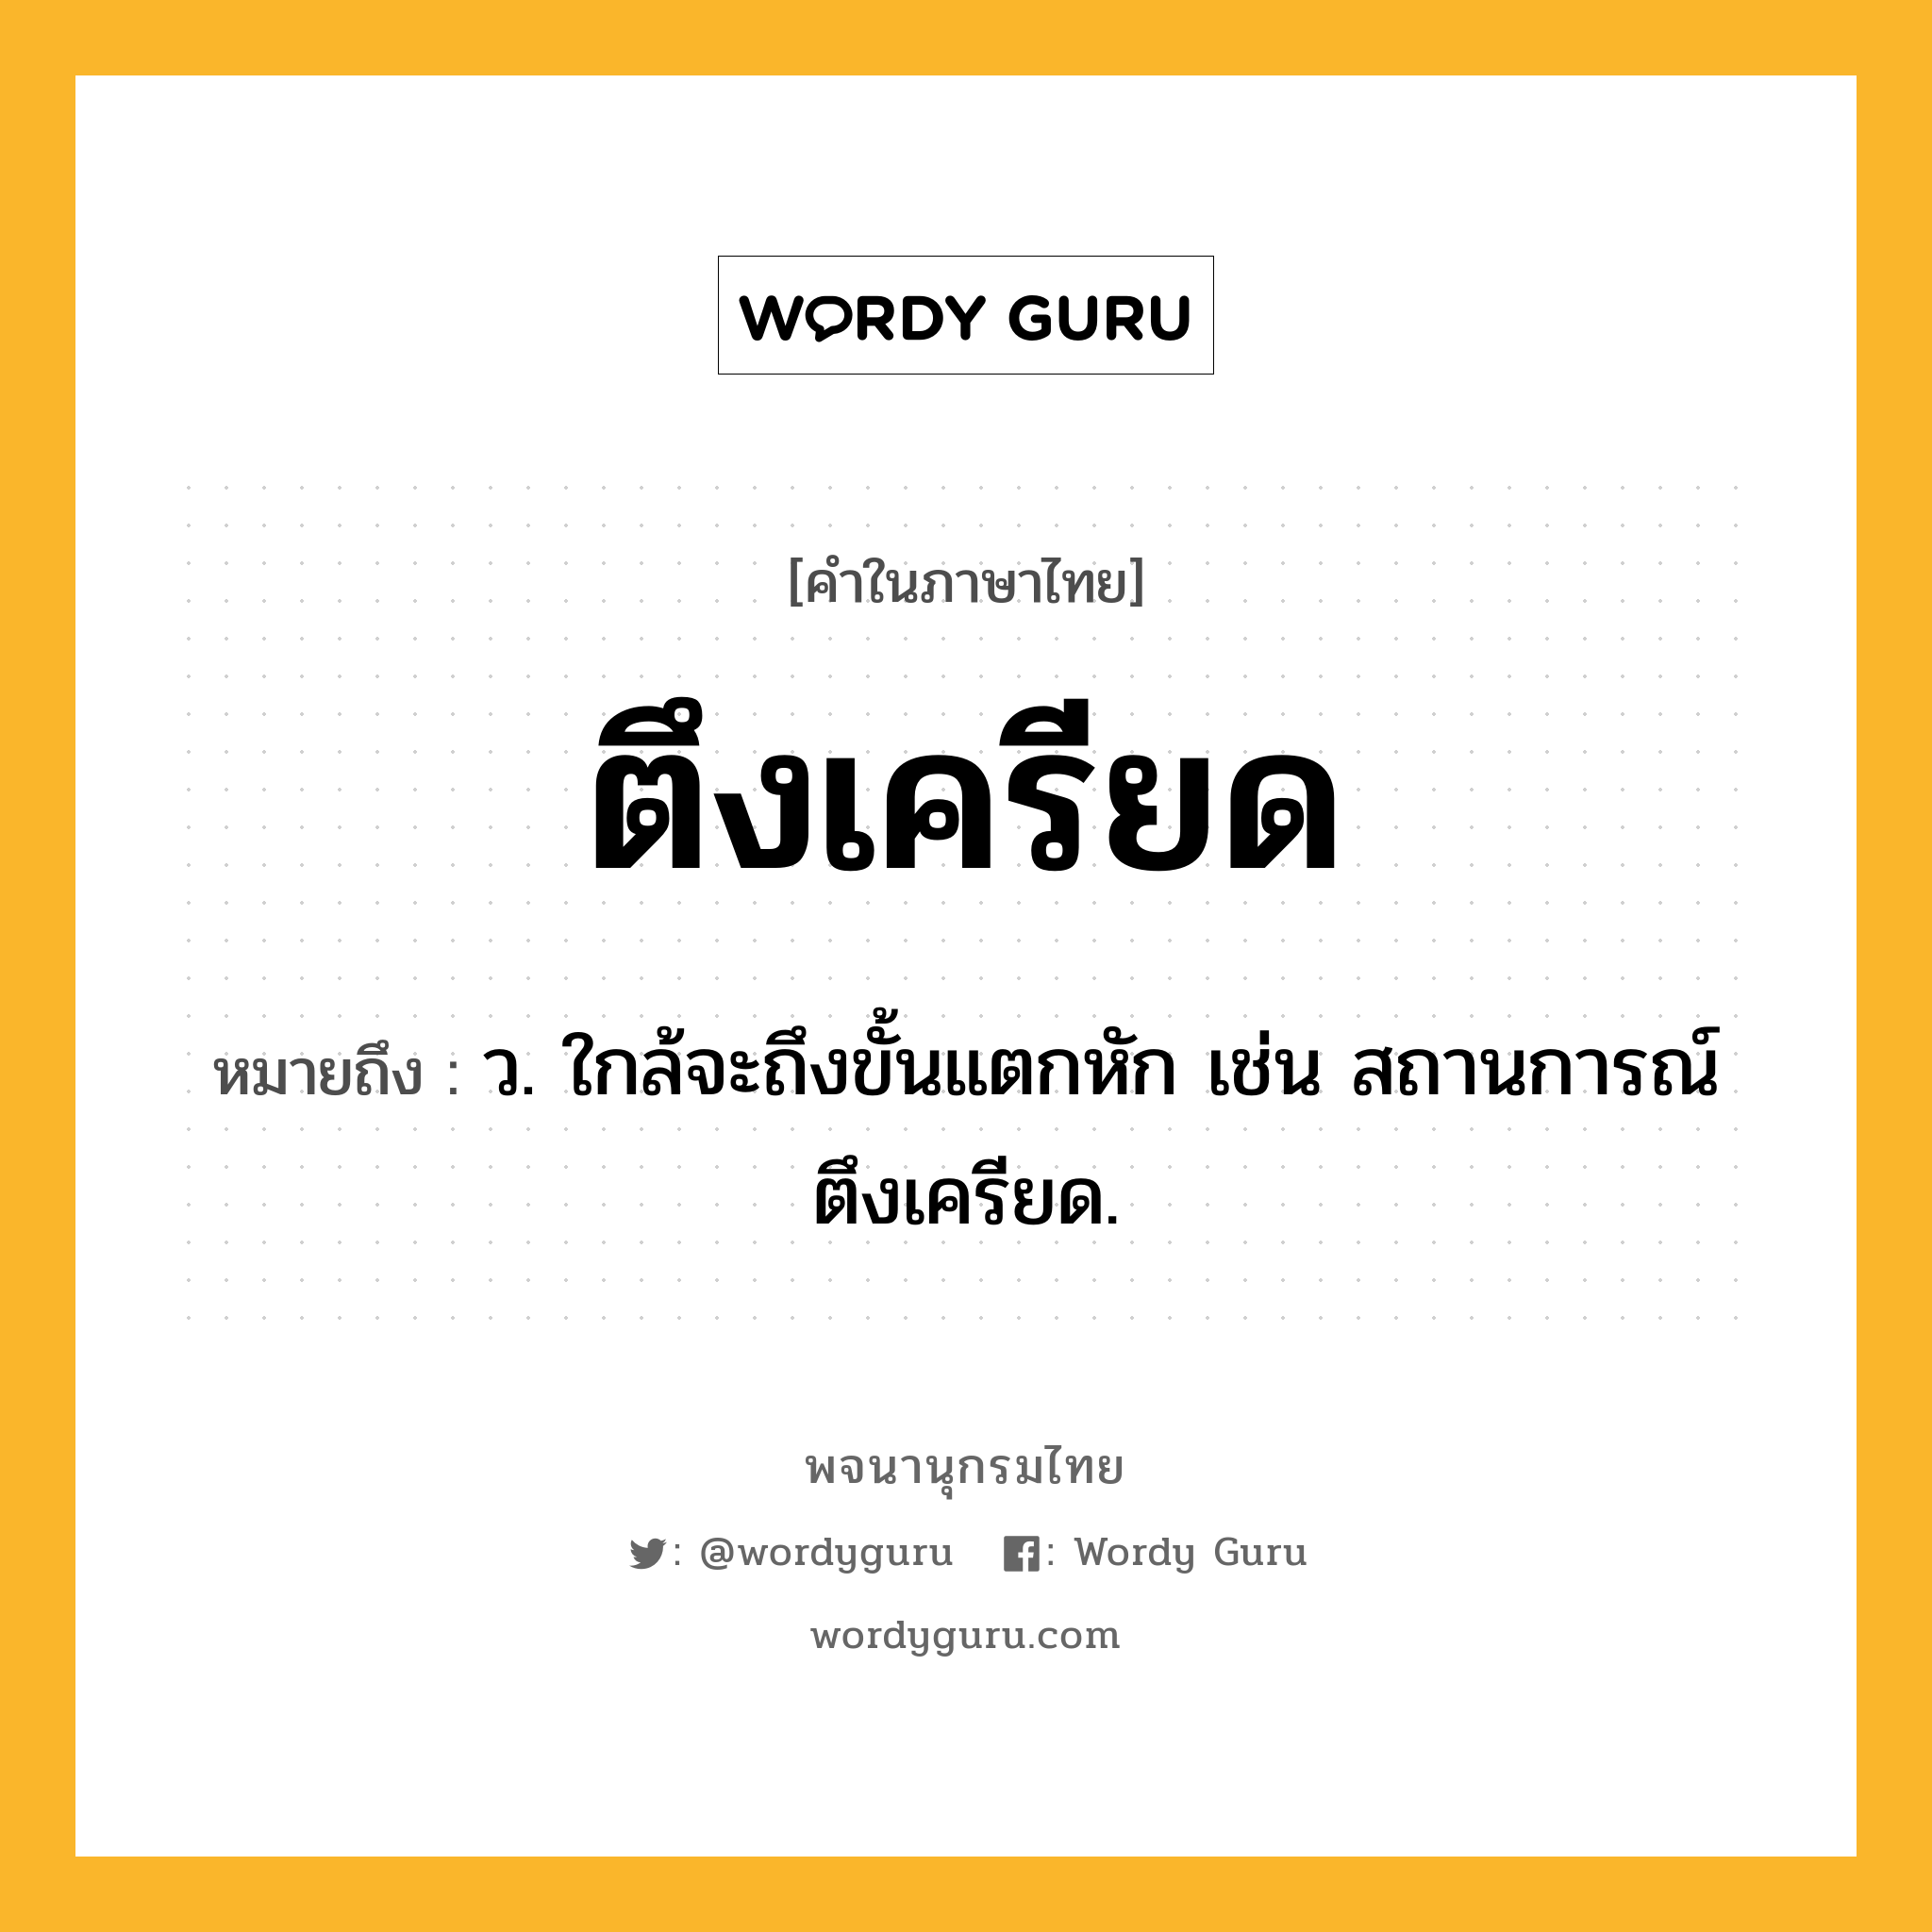 ตึงเครียด ความหมาย หมายถึงอะไร?, คำในภาษาไทย ตึงเครียด หมายถึง ว. ใกล้จะถึงขั้นแตกหัก เช่น สถานการณ์ตึงเครียด.